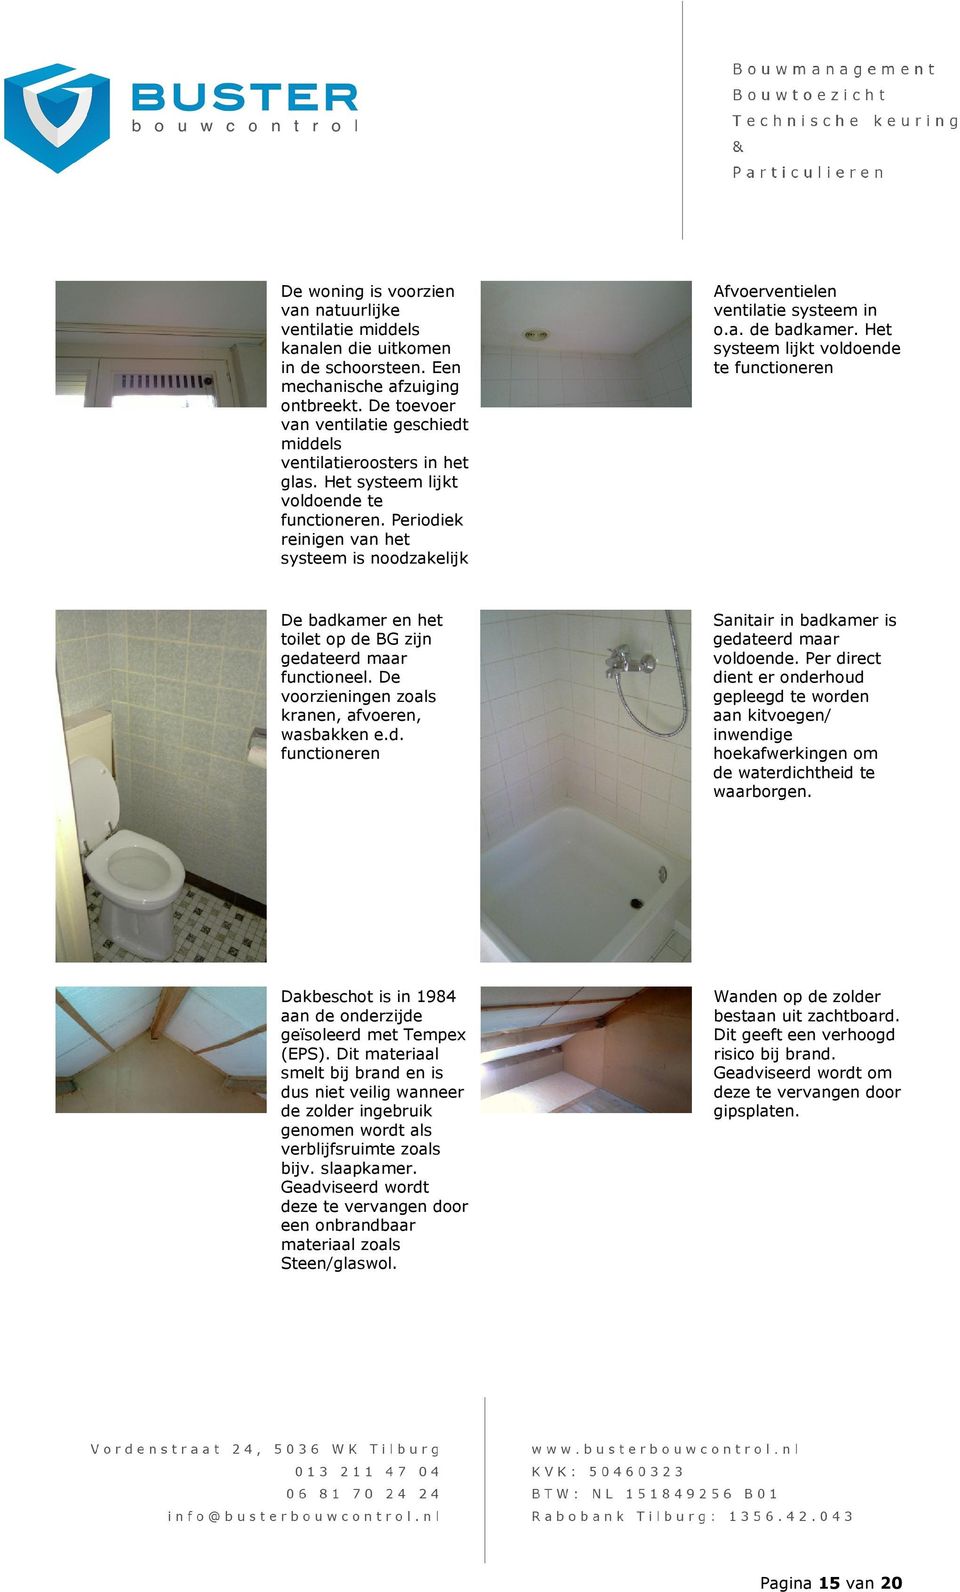 Periodiek reinigen van het systeem is noodzakelijk Afvoerventielen ventilatie systeem in o.a. de badkamer.